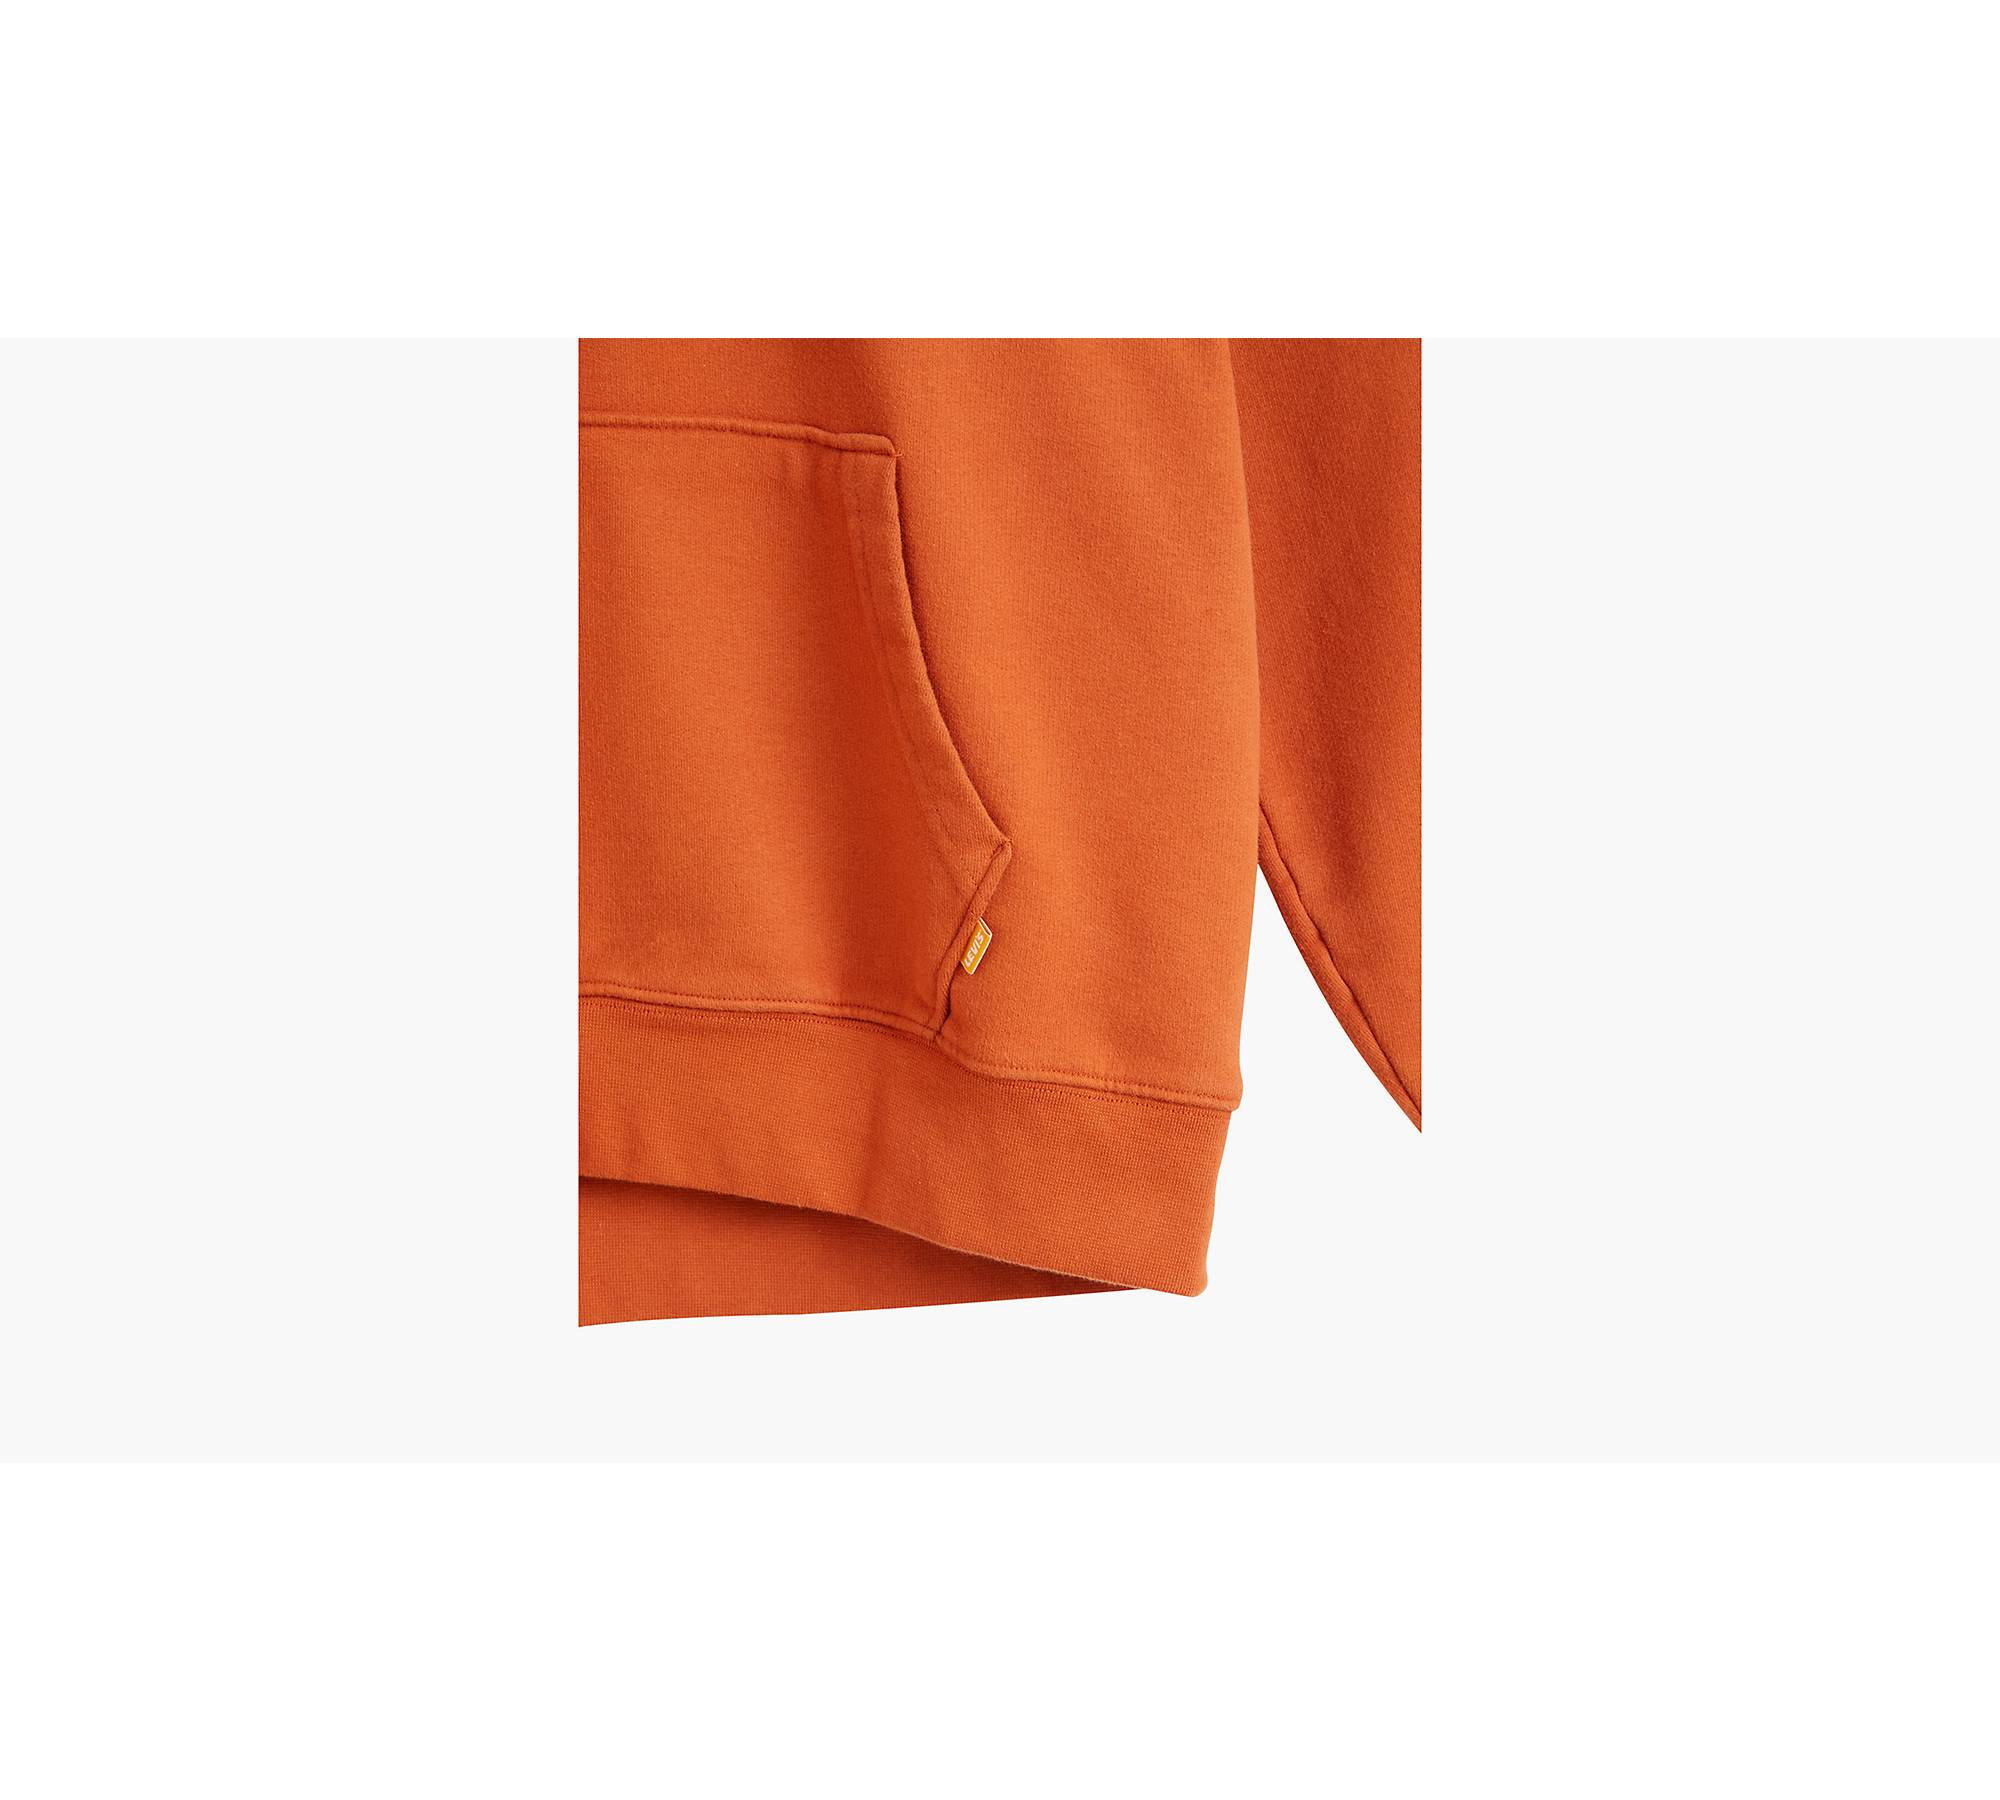 Gold Tab™ Hoodie Sweatshirt - Brown | Levi's® US